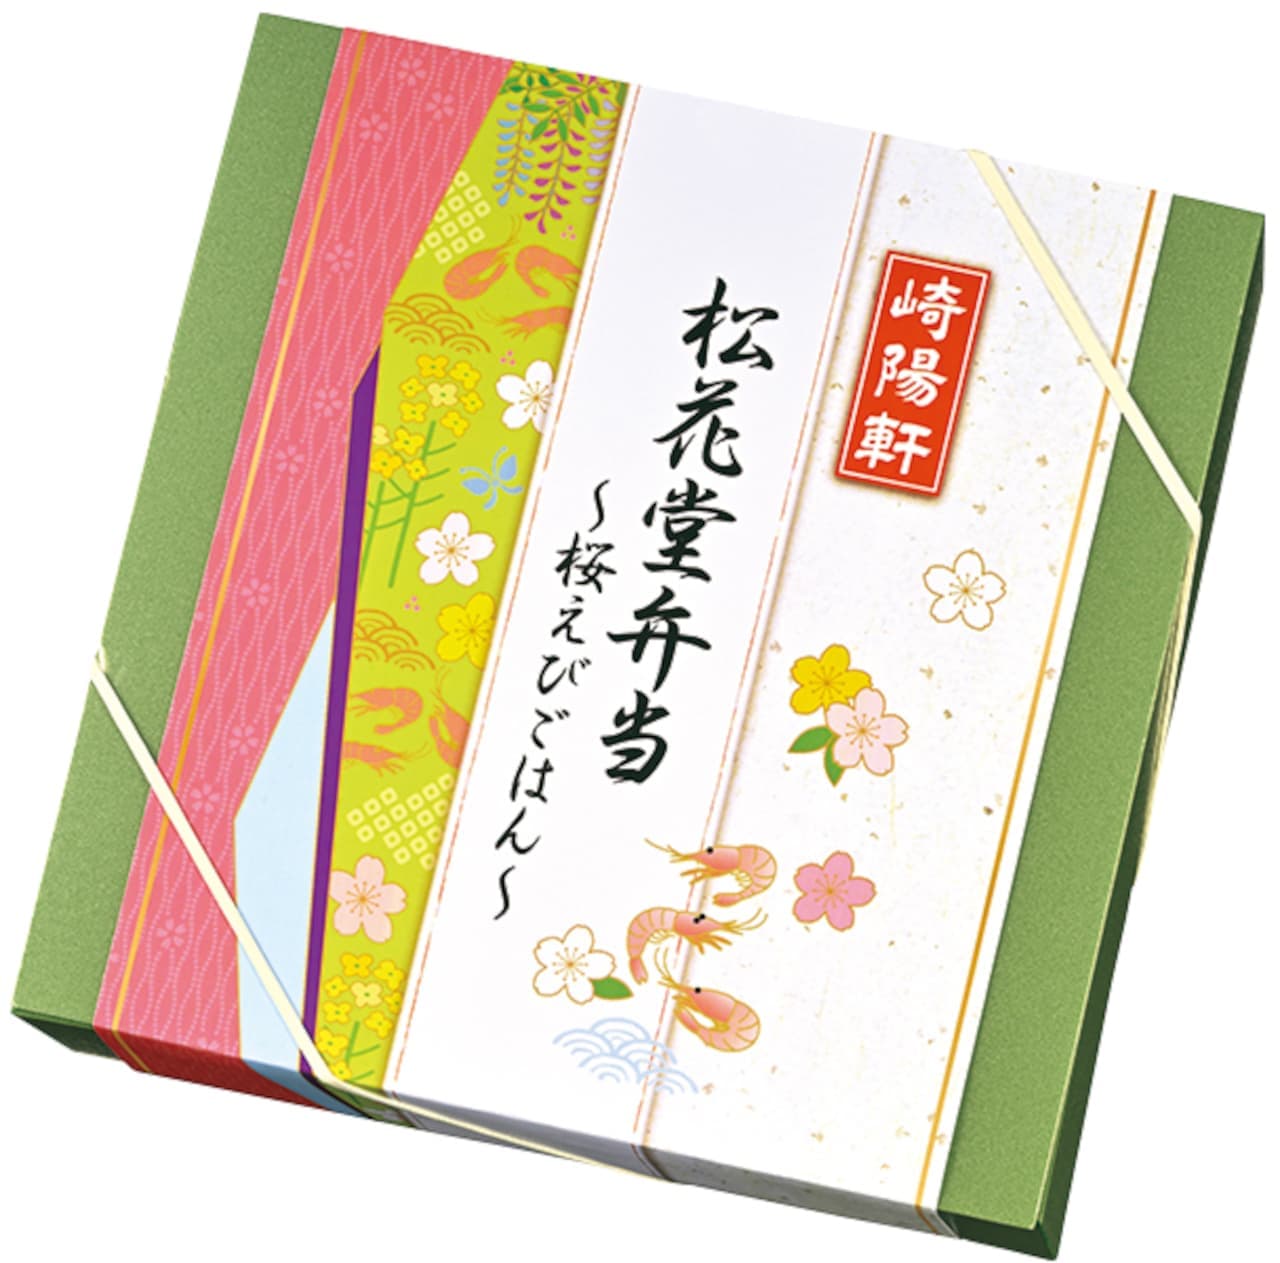 Sakiyo-ken "Shokado Bento - Sakuraebi Gohan" package